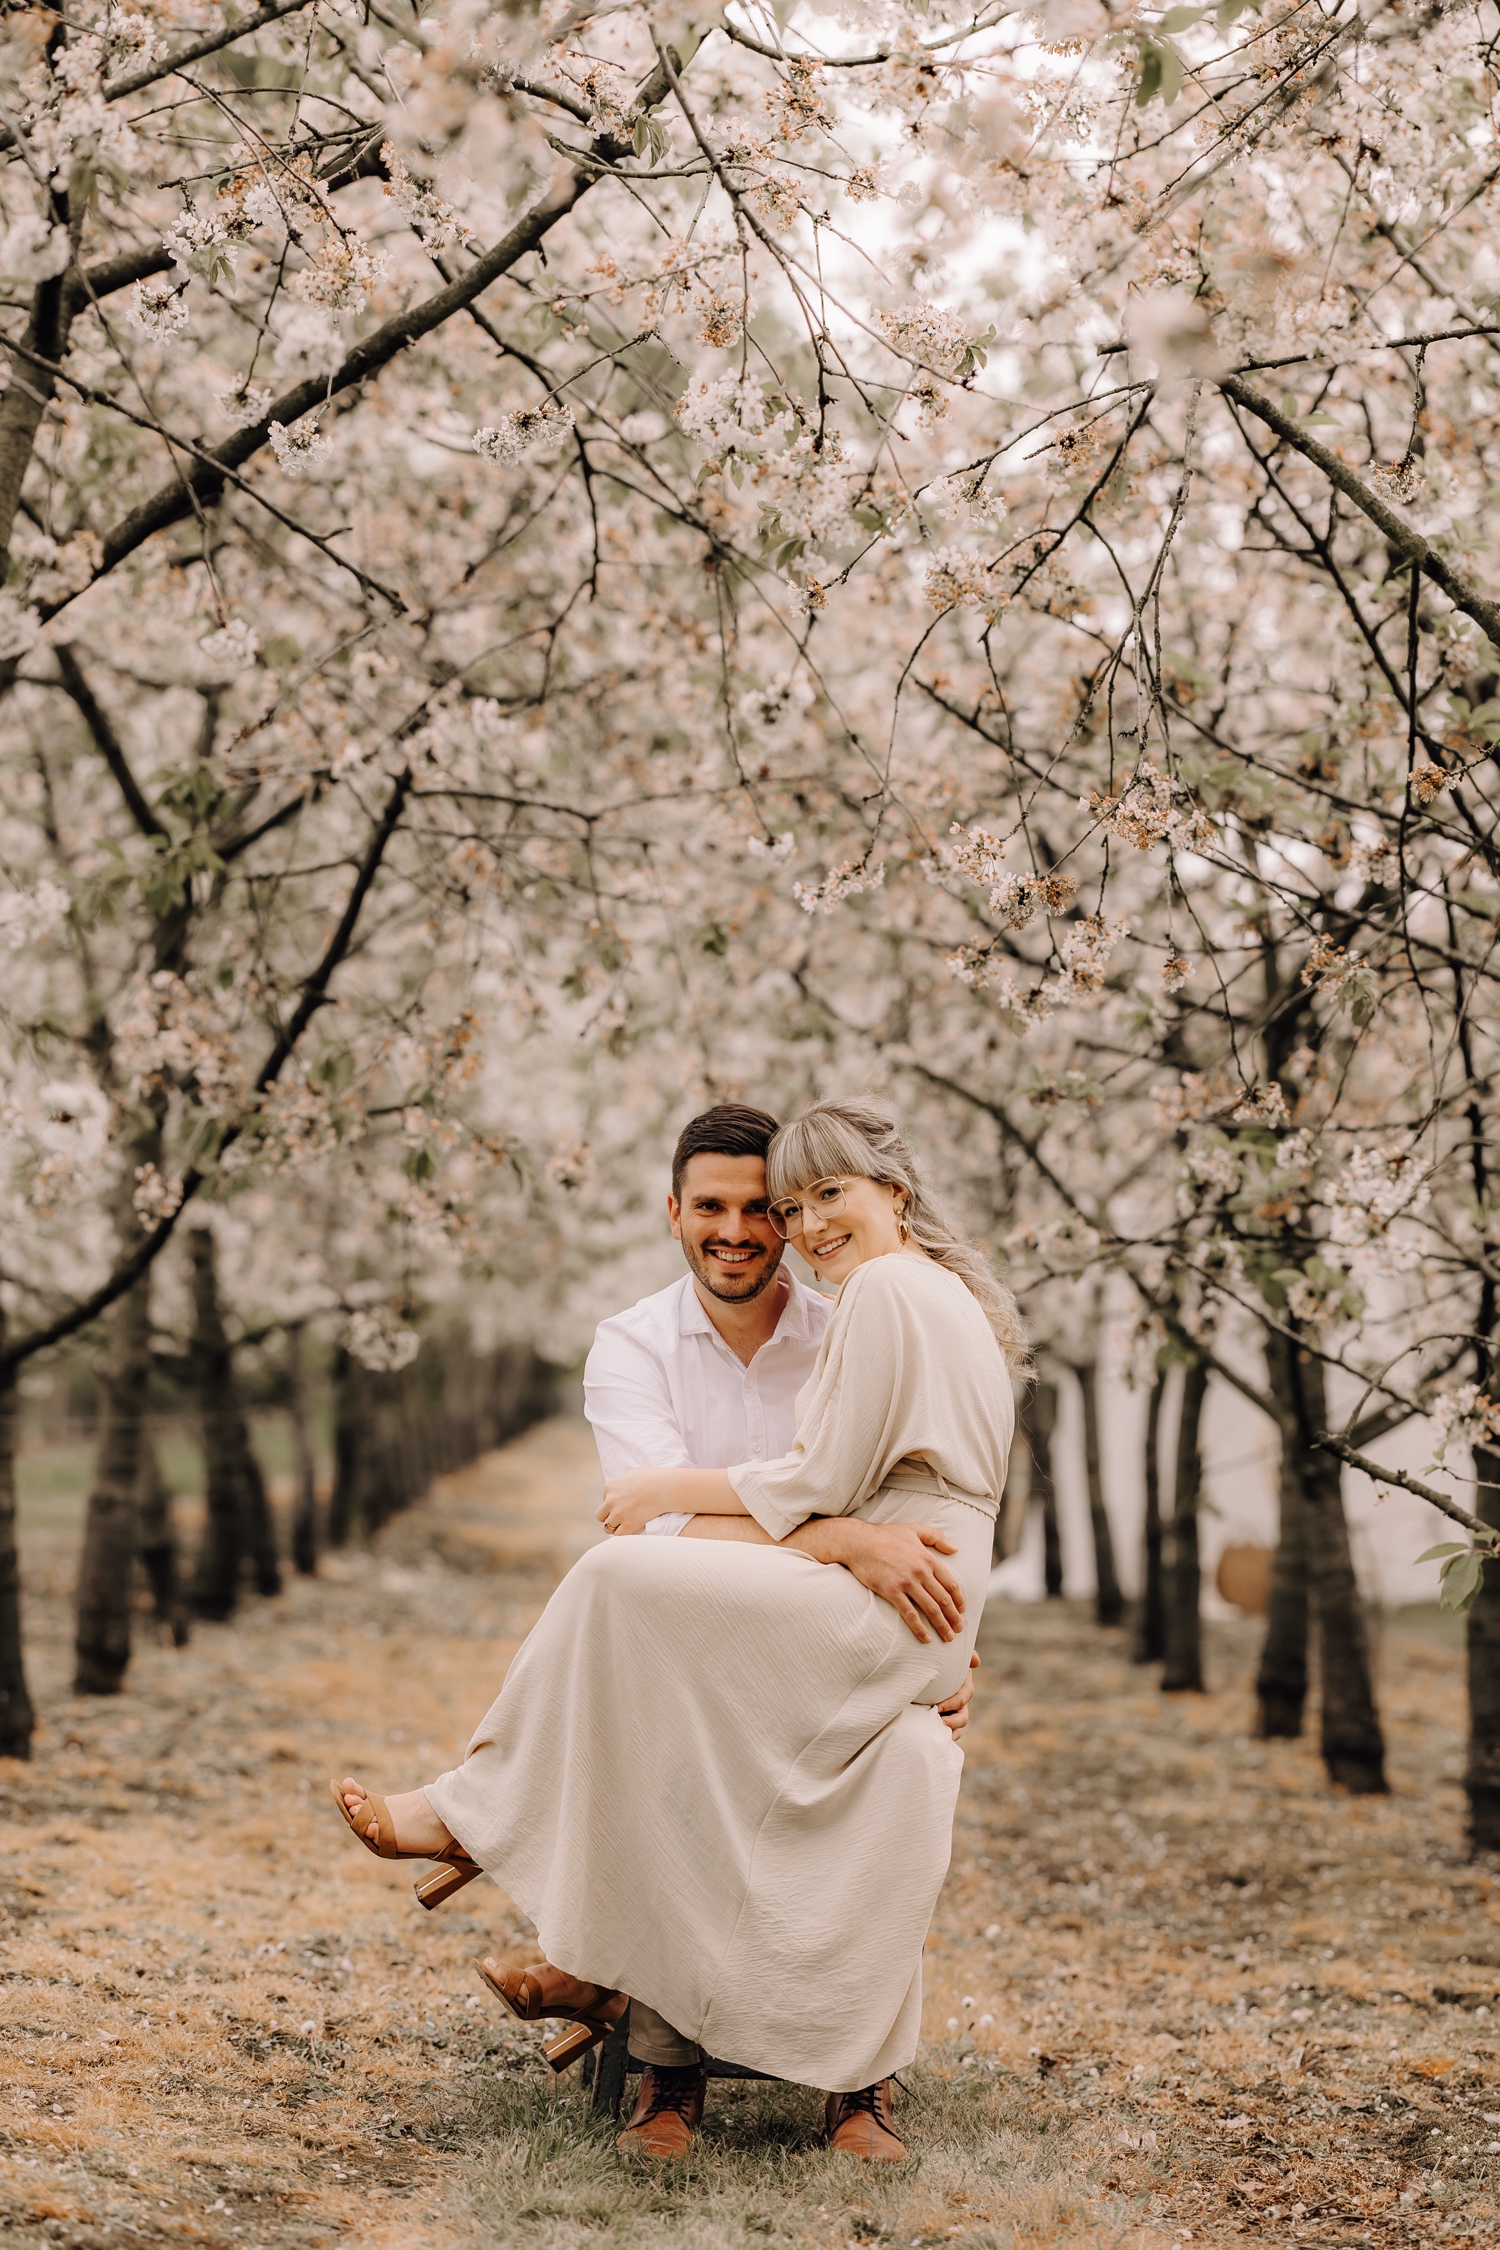 Huwelijksfotograaf Limburg - verlooft koppel poseert tussen de bloesems